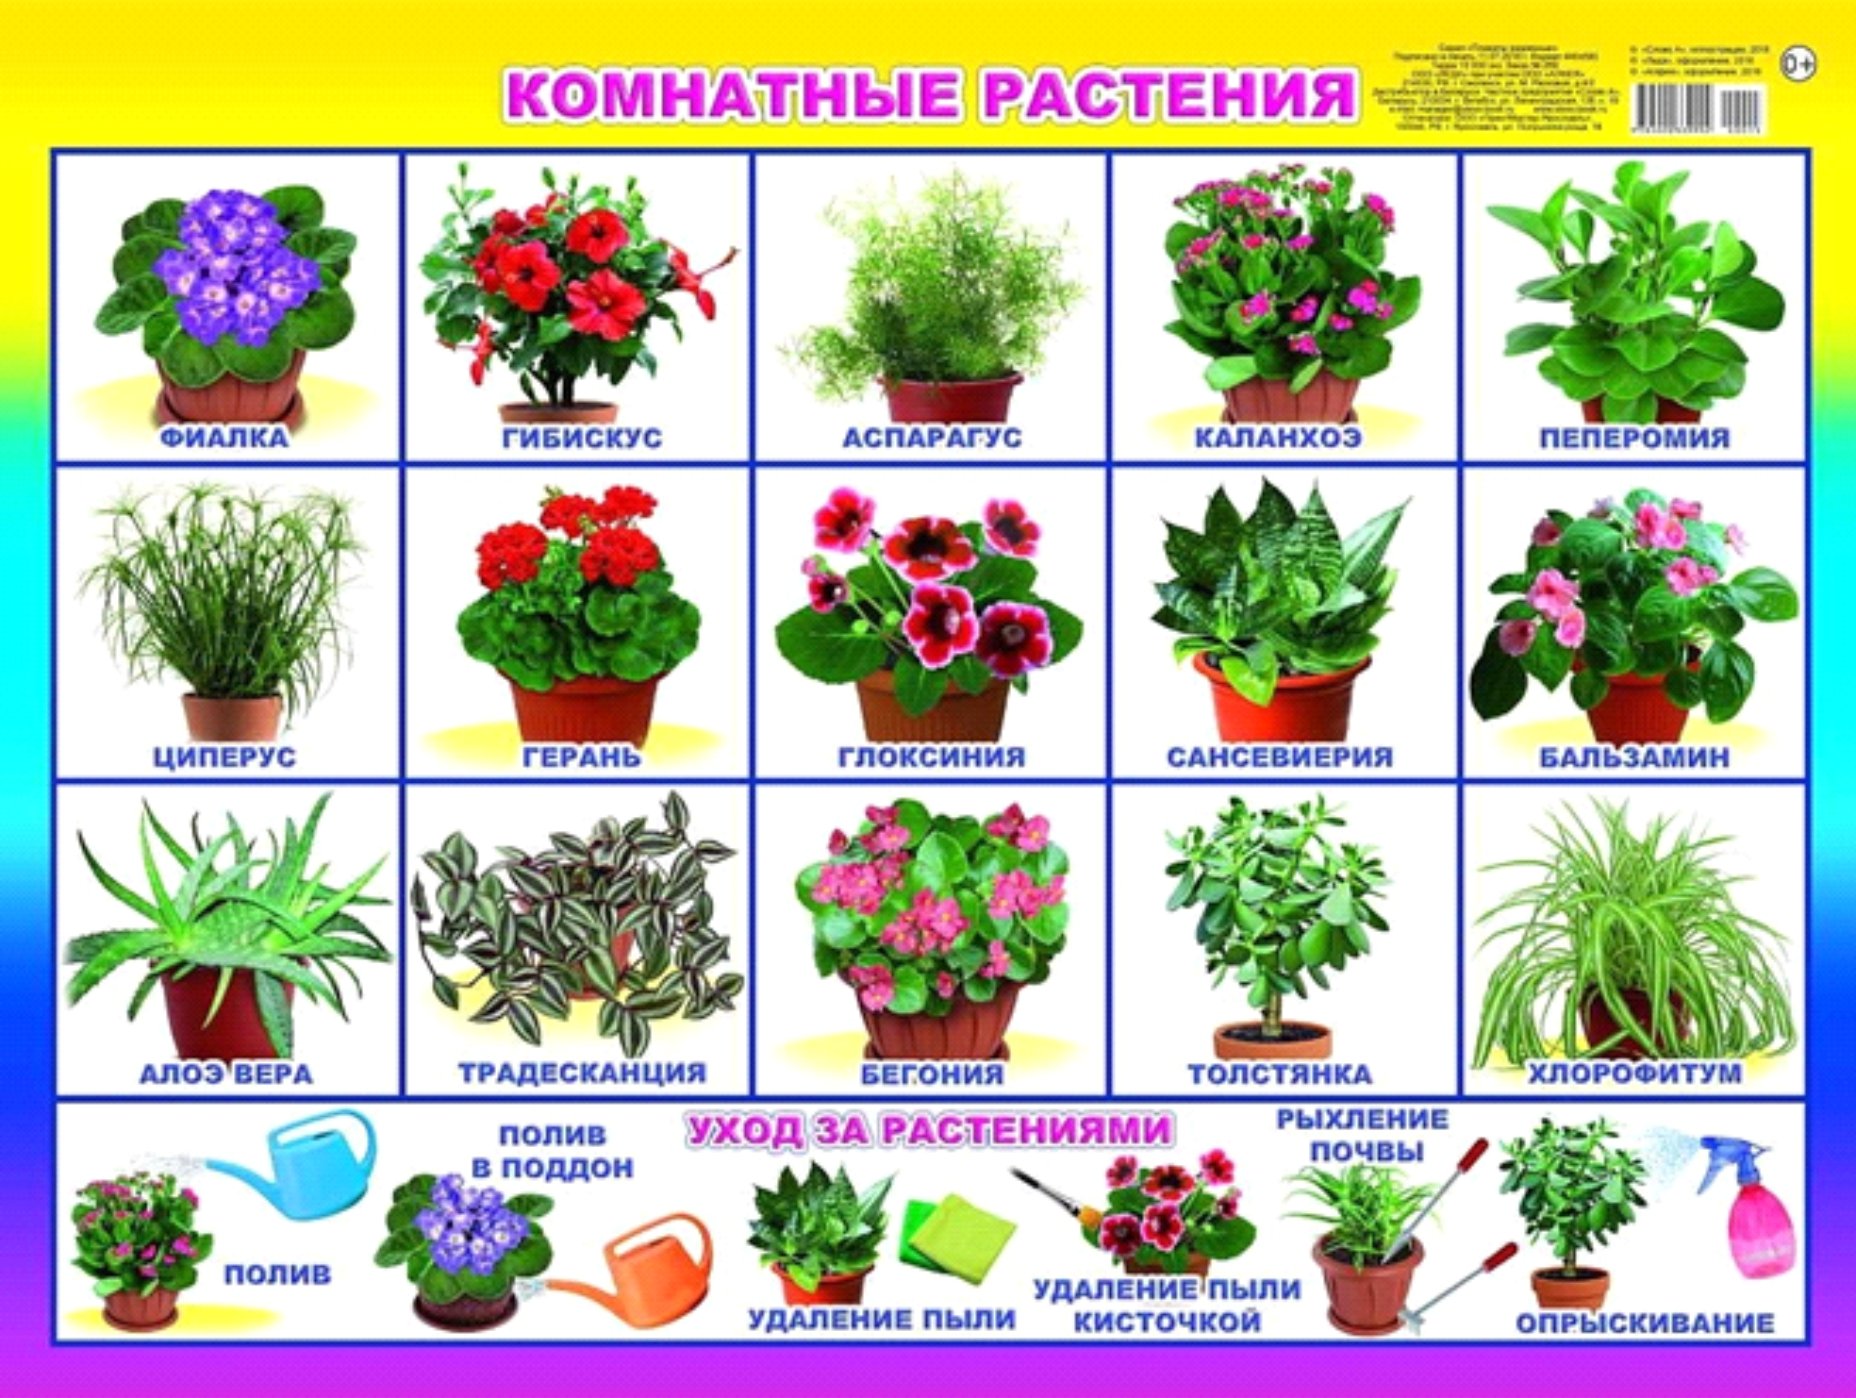 Красивые названия цветов растений. Растения в детском саду. Комнатные растения для детей. Комнатные растения для детей с названиями. Плакат. Комнатные растения.